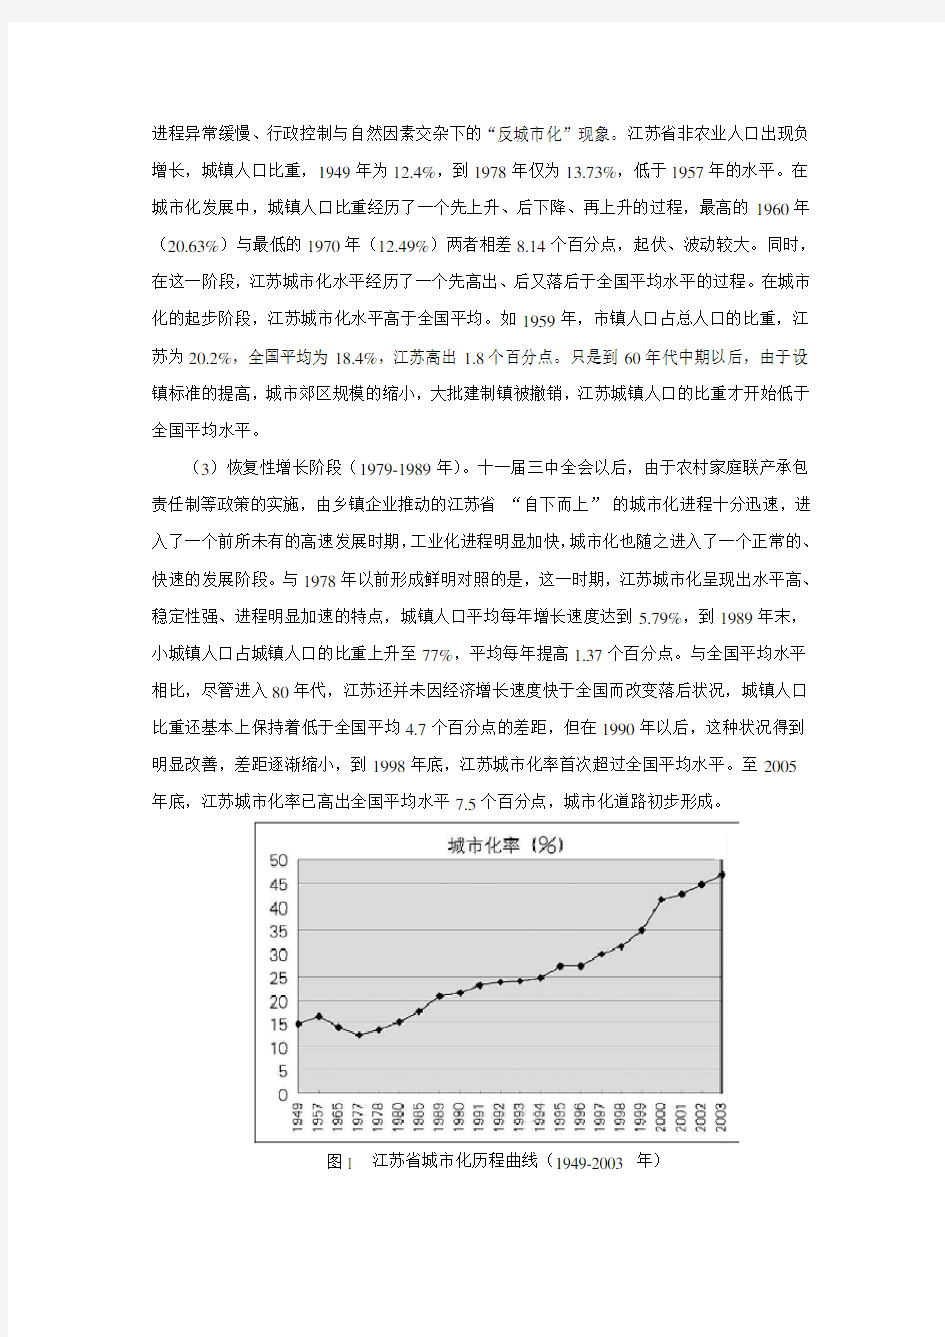 江苏省城市化发展分析